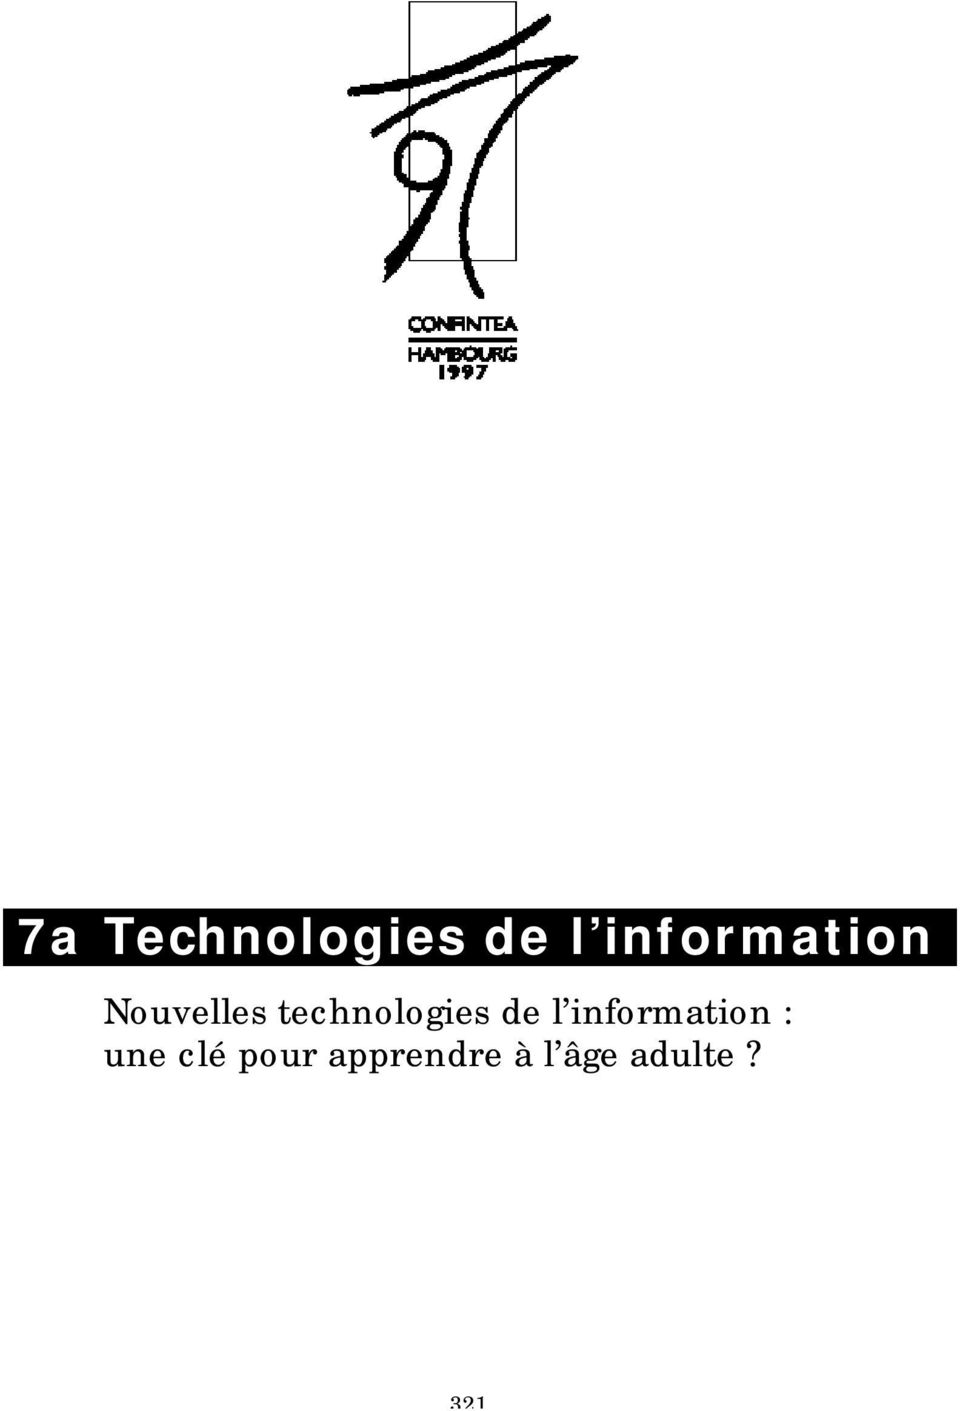 technologies de l information